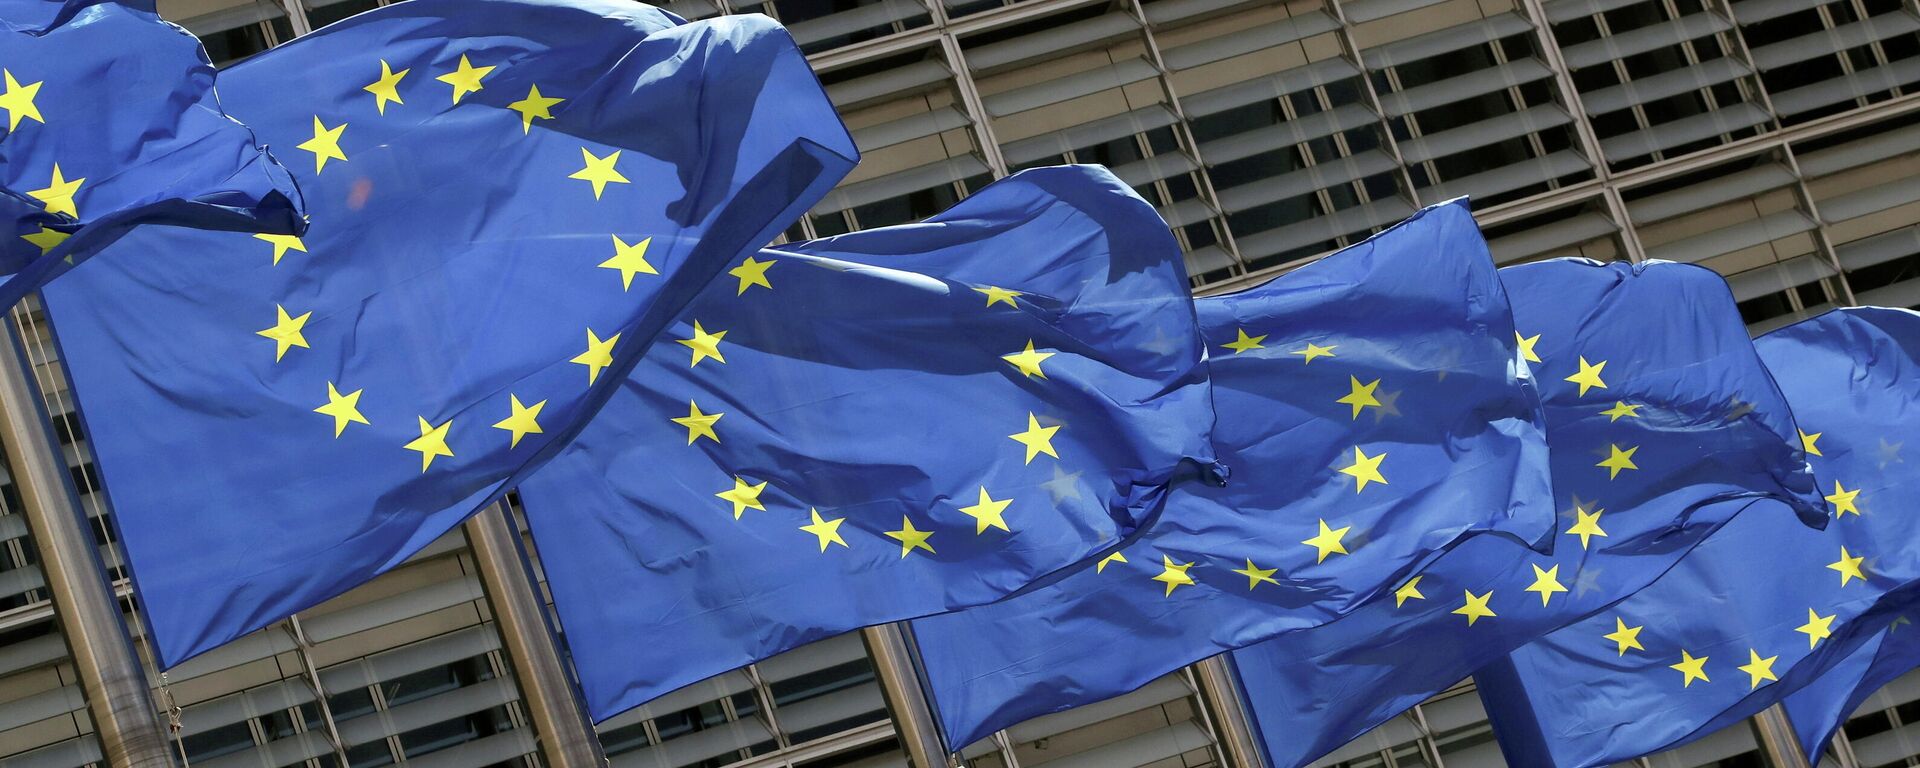 Флаги Европейского союза у штаб-квартиры Европейской комиссии в Брюсселе - Sputnik Литва, 1920, 19.08.2021